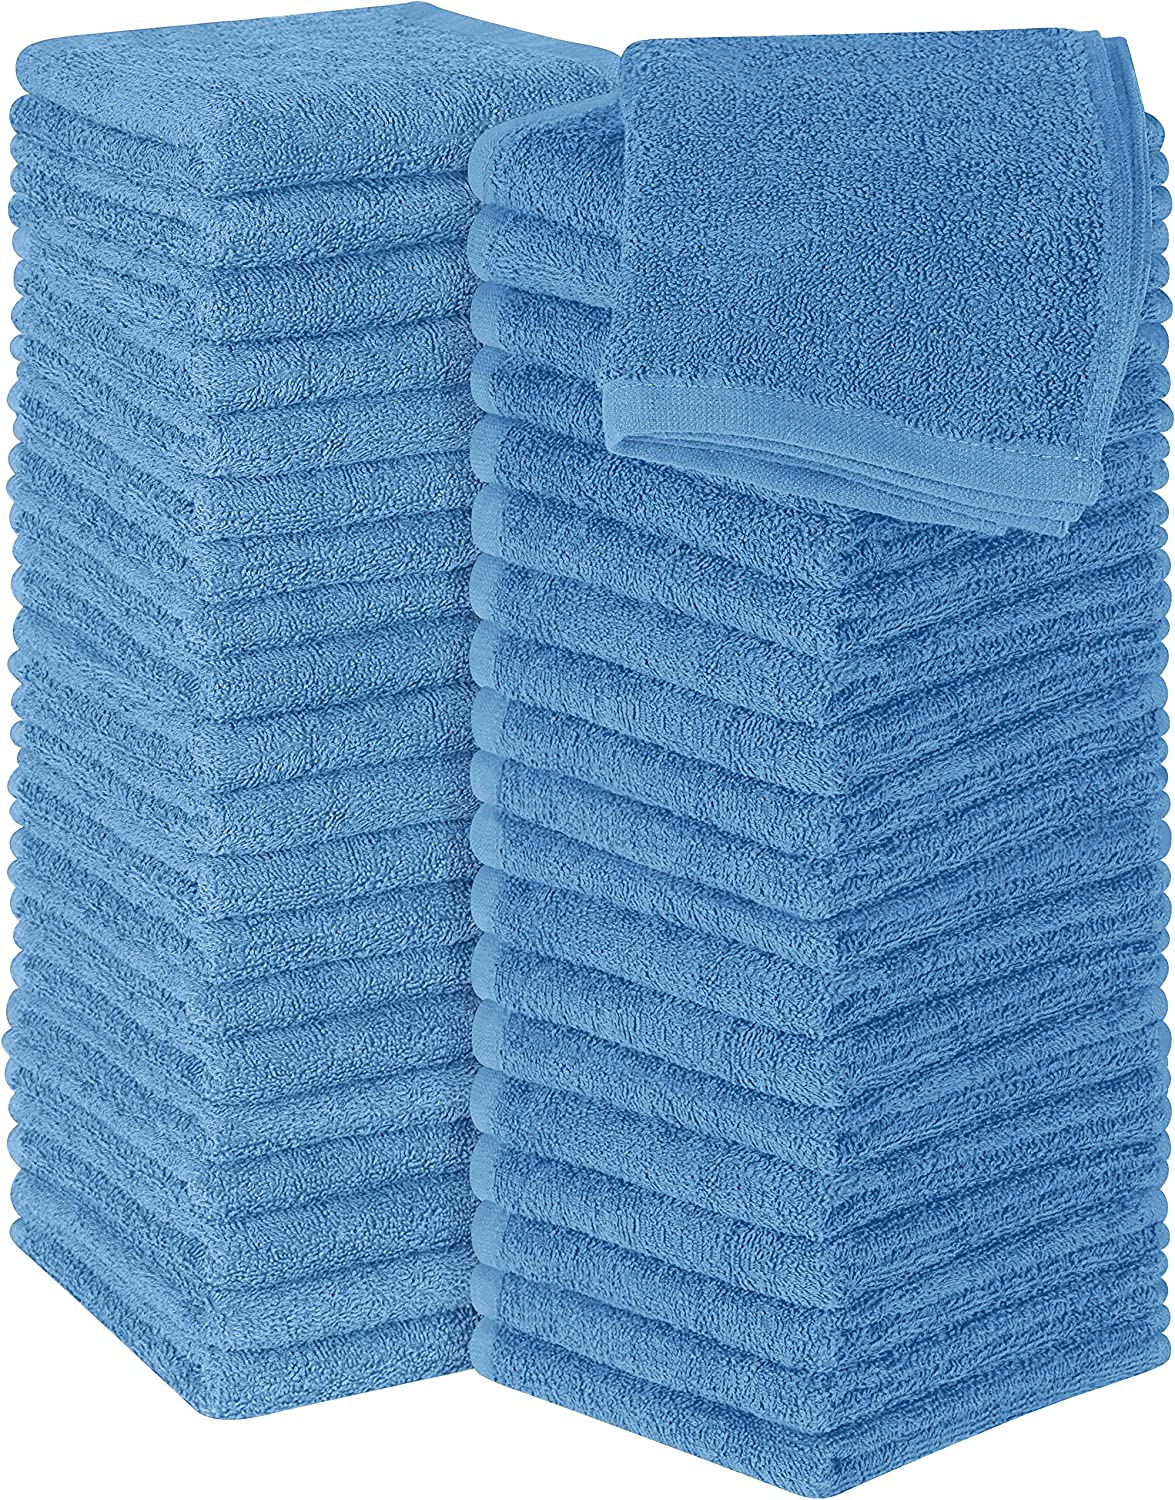 Utopia Towels – Petites Serviettes, débarbouillettes – 30 x 30 cm (60 Paquets, Bleu électrique)